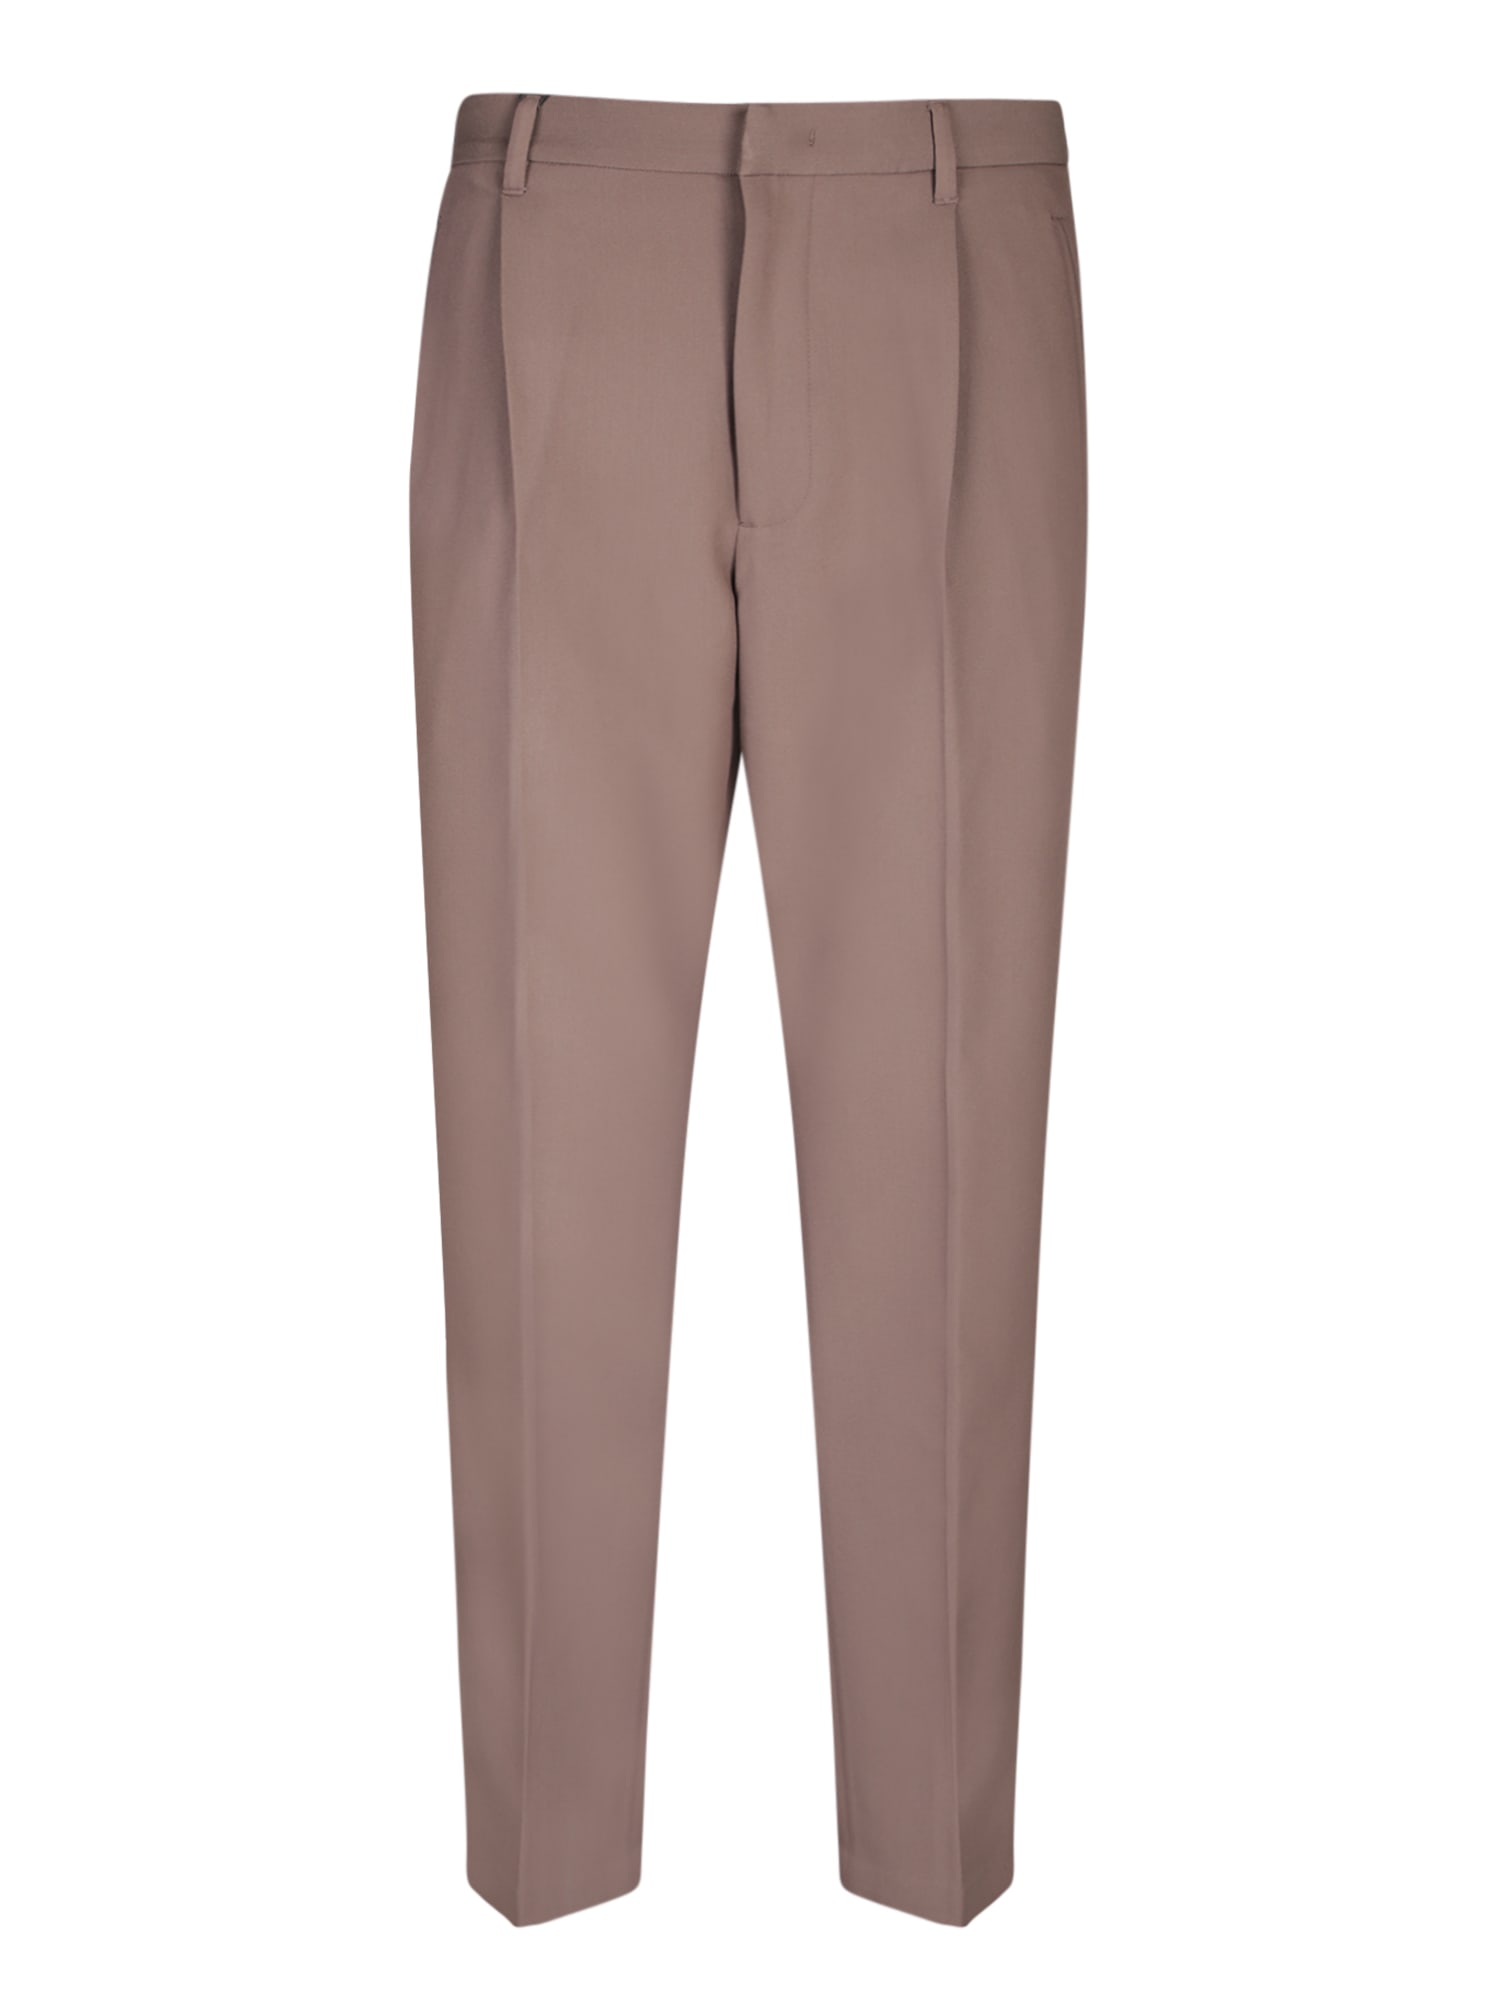 Emporio Armani Pleats Brown Trousers